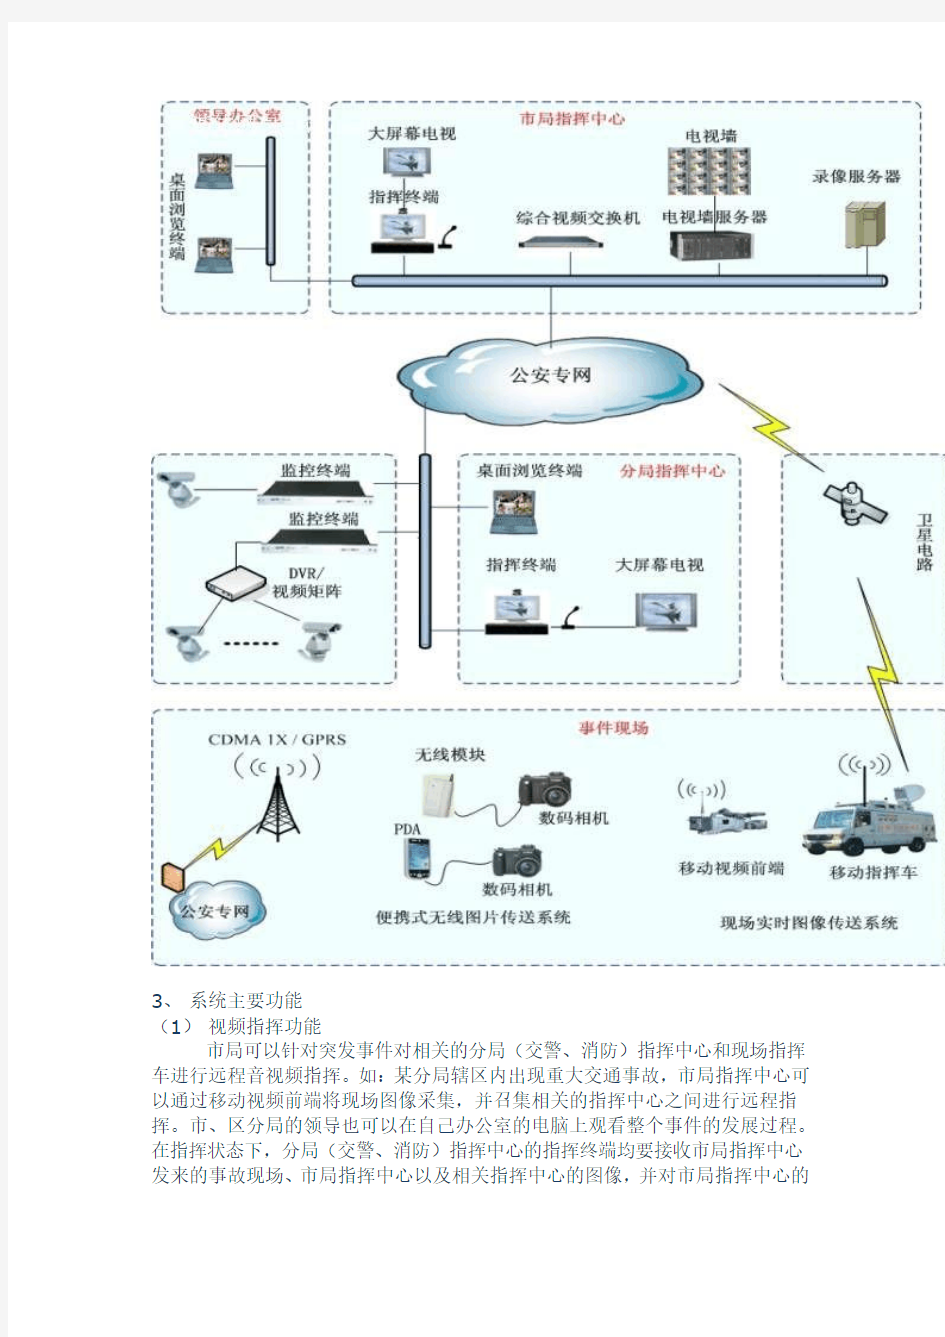 华纬讯综合视频指挥系统在公安指挥中心的应用